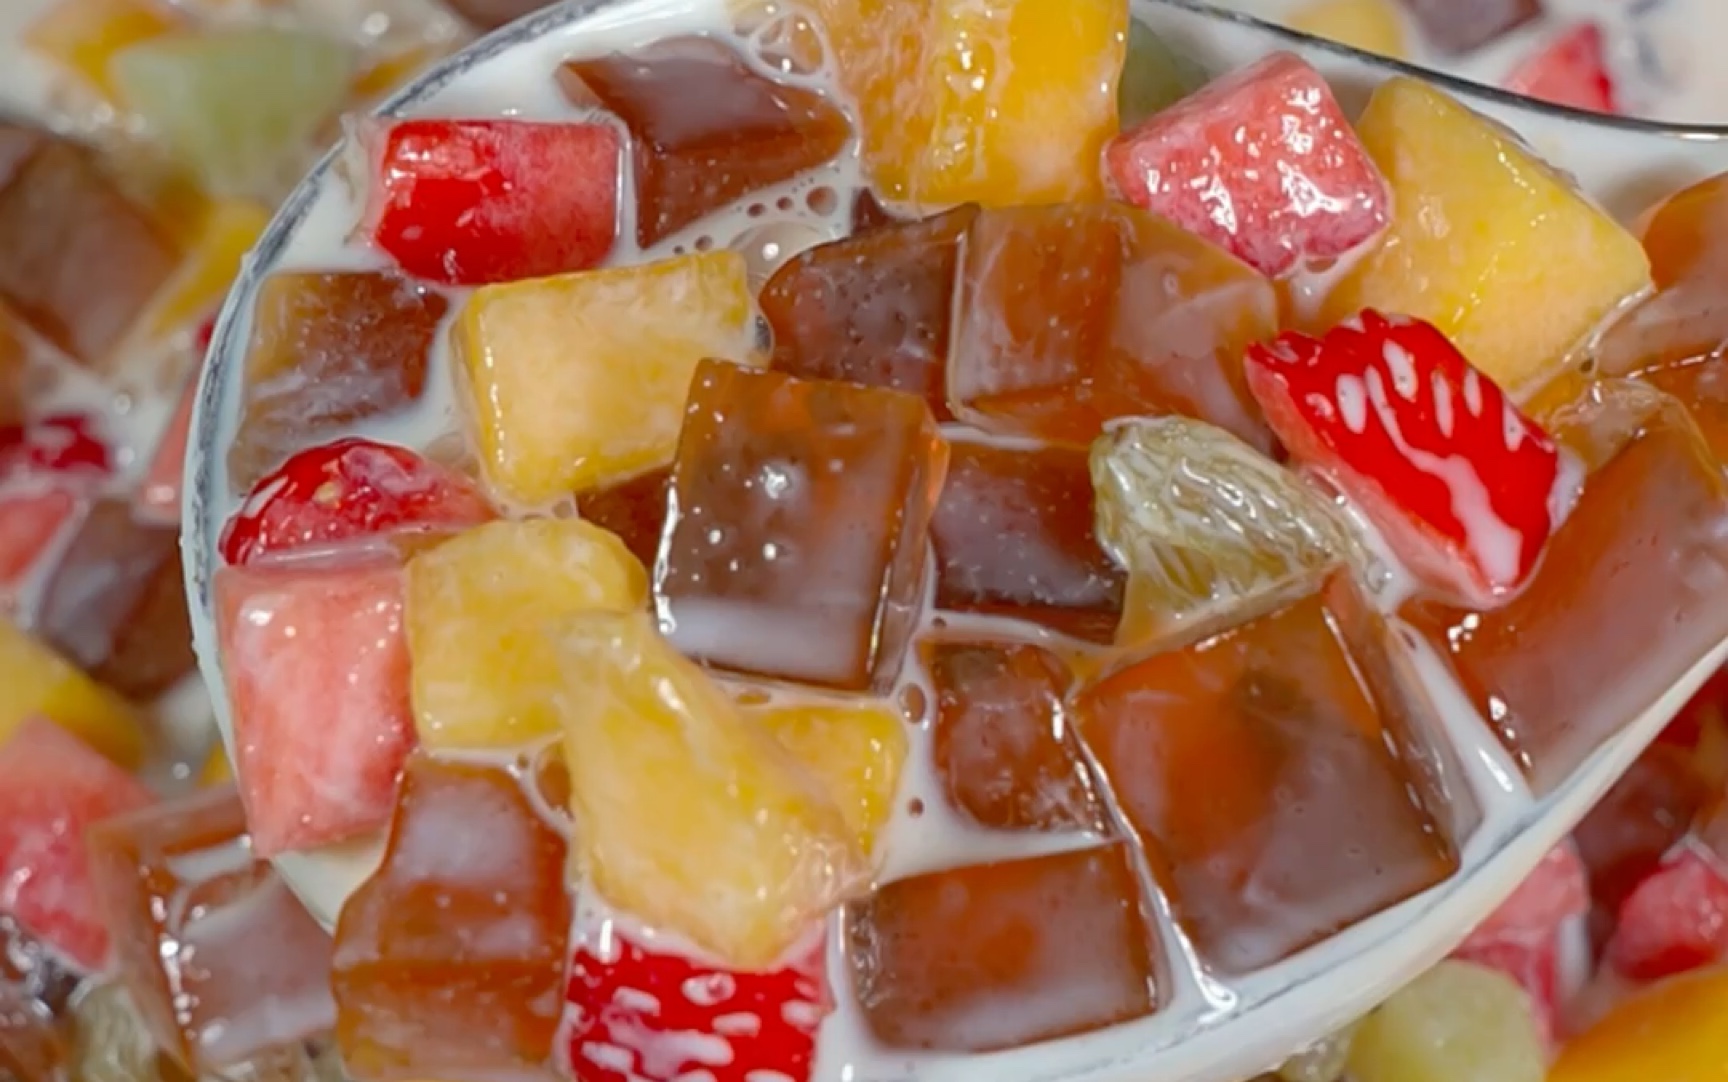 糖水店的招牌红糖水果捞，夏天来了给家人来一杯吧